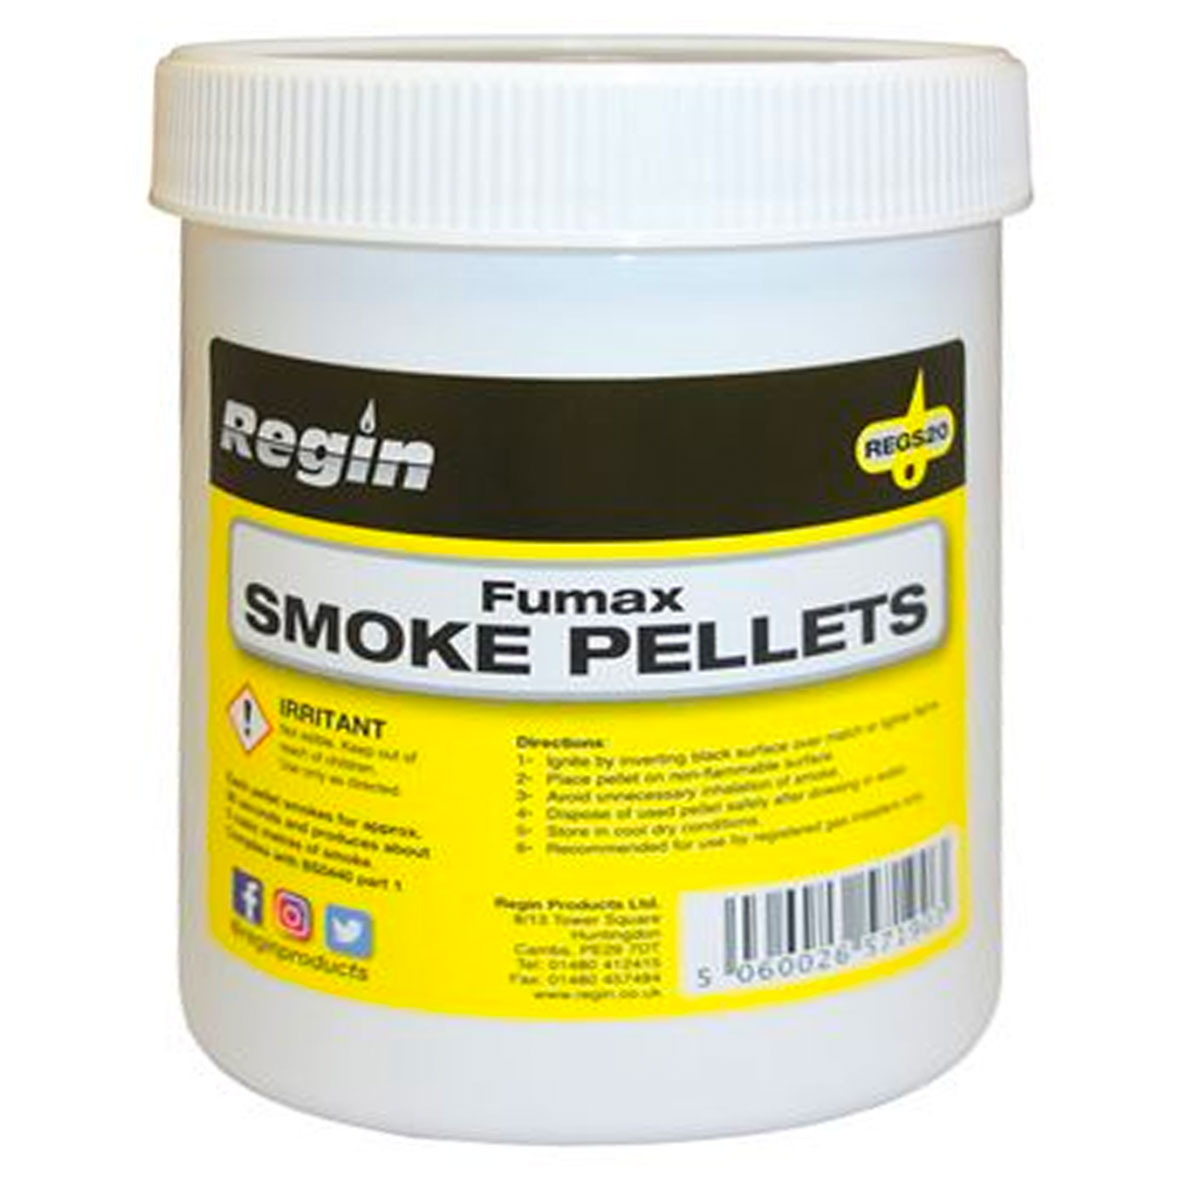 Fumax Smoke Pellets - Tub of 100